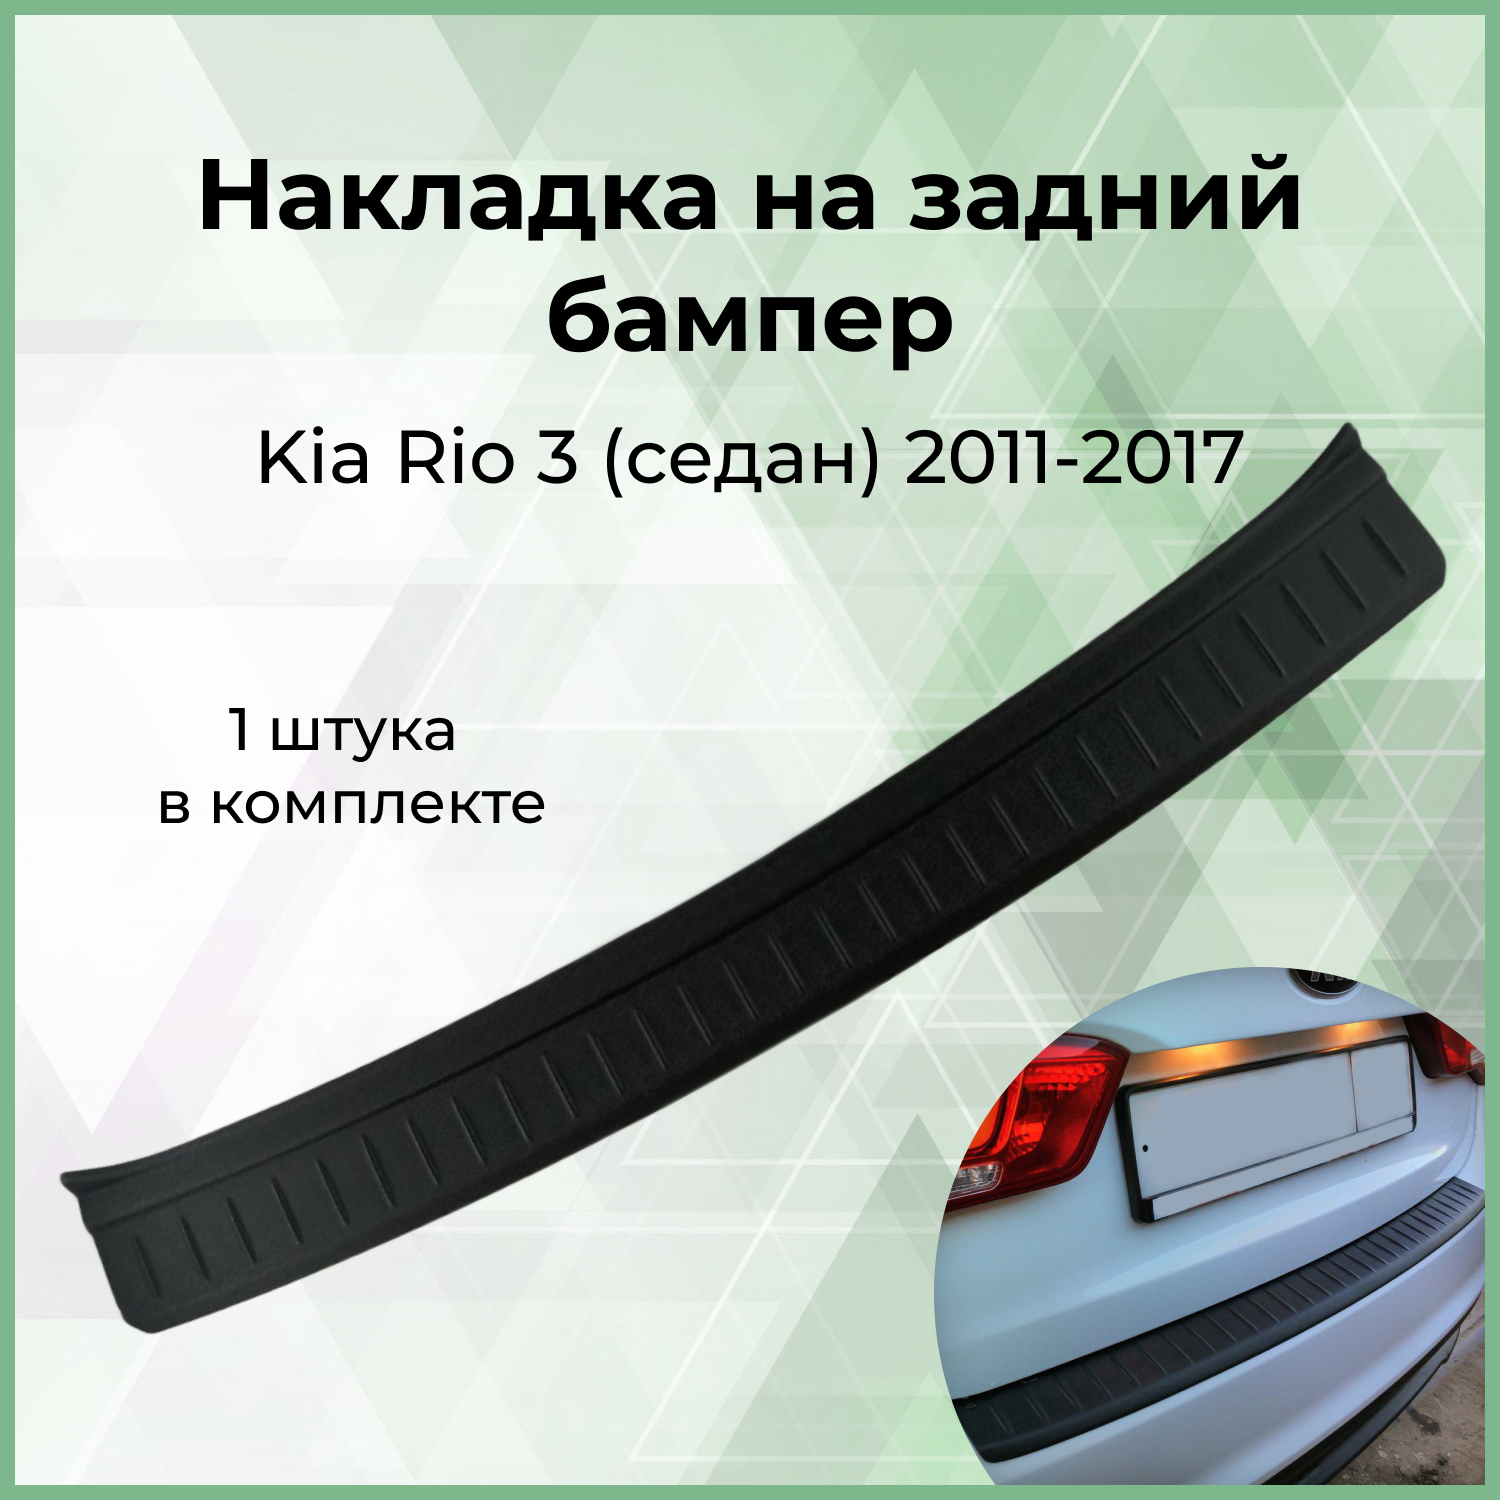 Накладка на задний бампер для Kia Rio 3 (седан) 2011-2017 г.в.